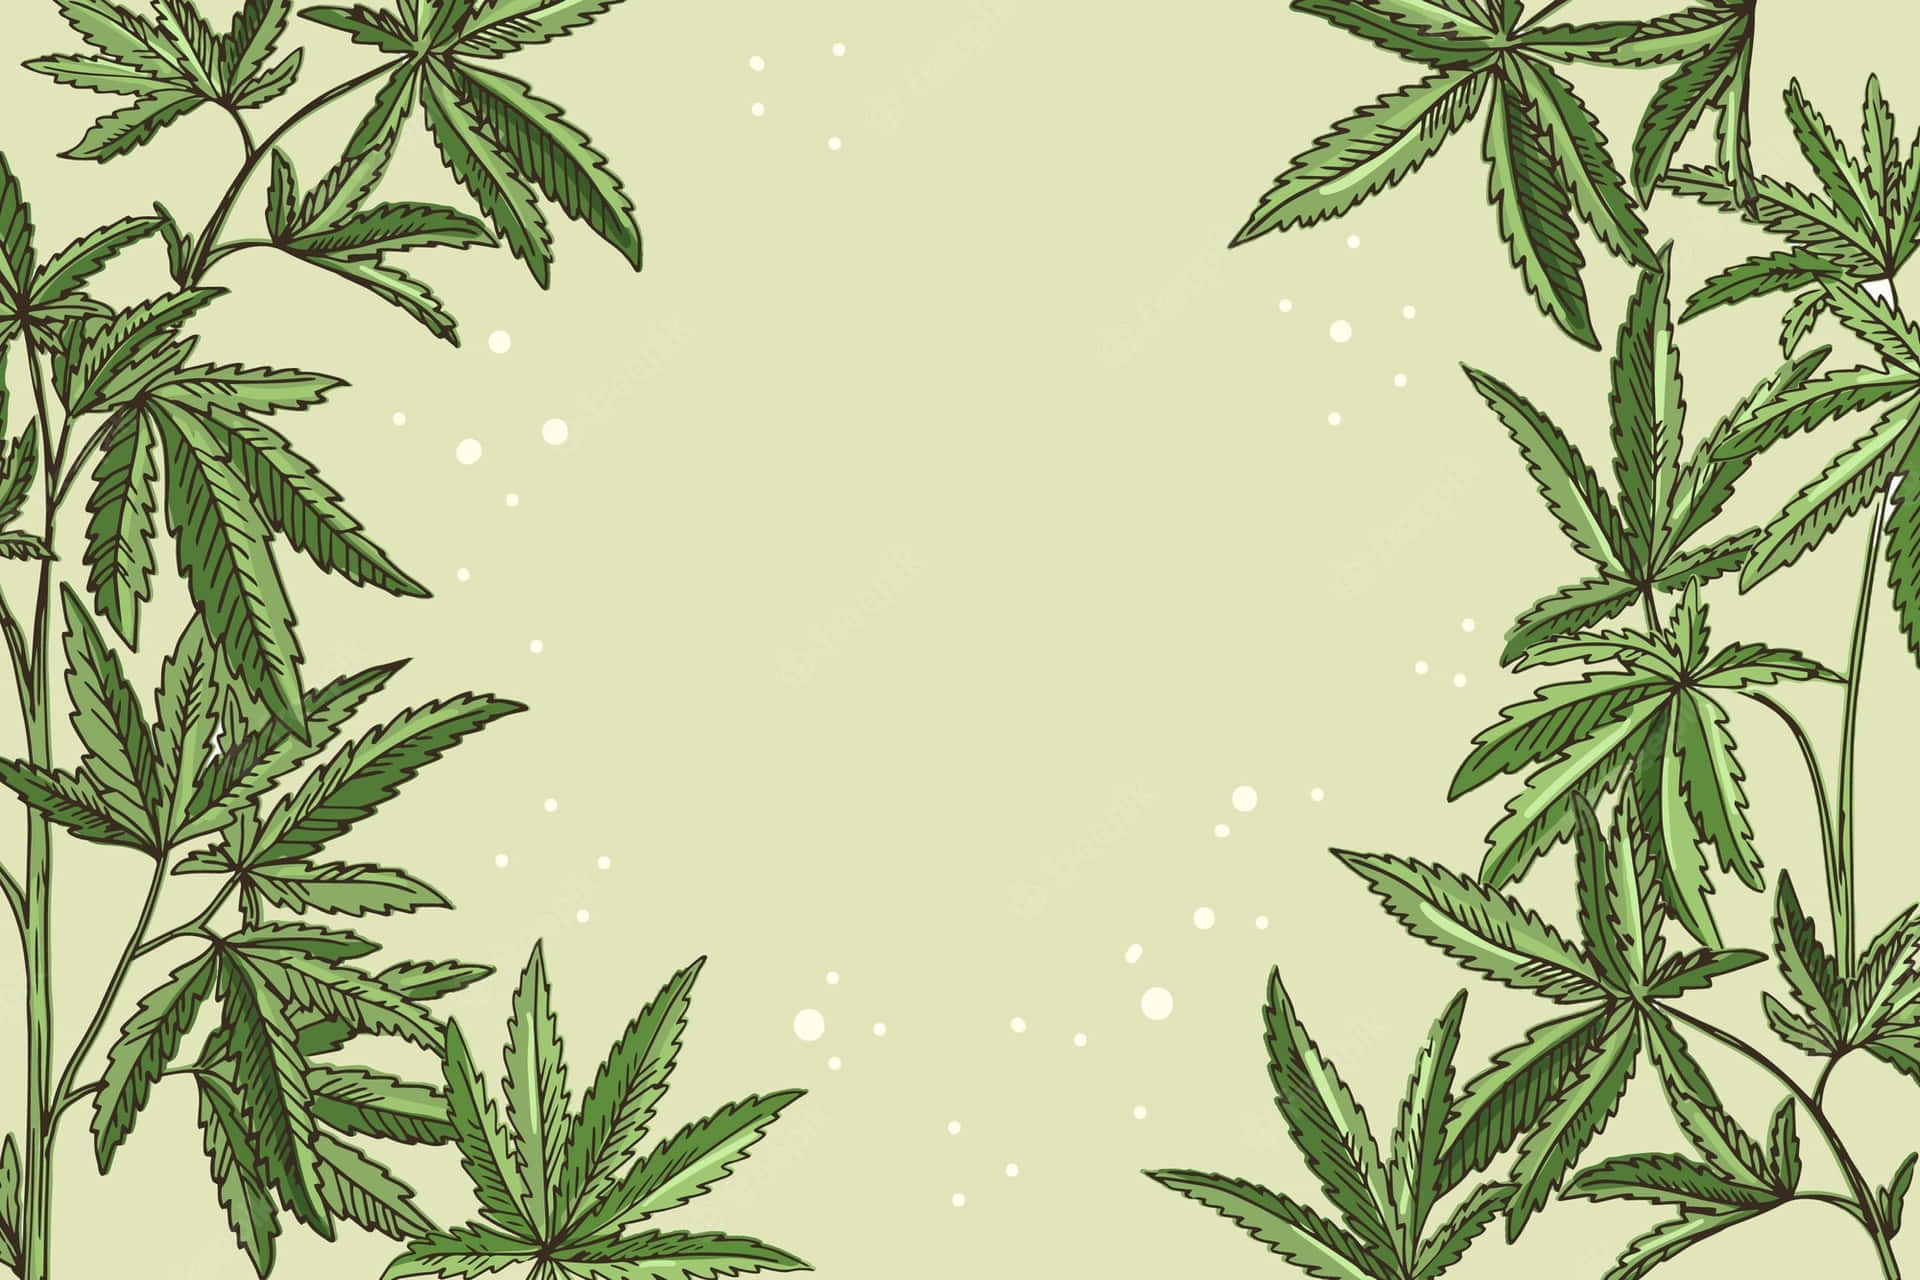 Illustration Art Of Marijuana Leaves